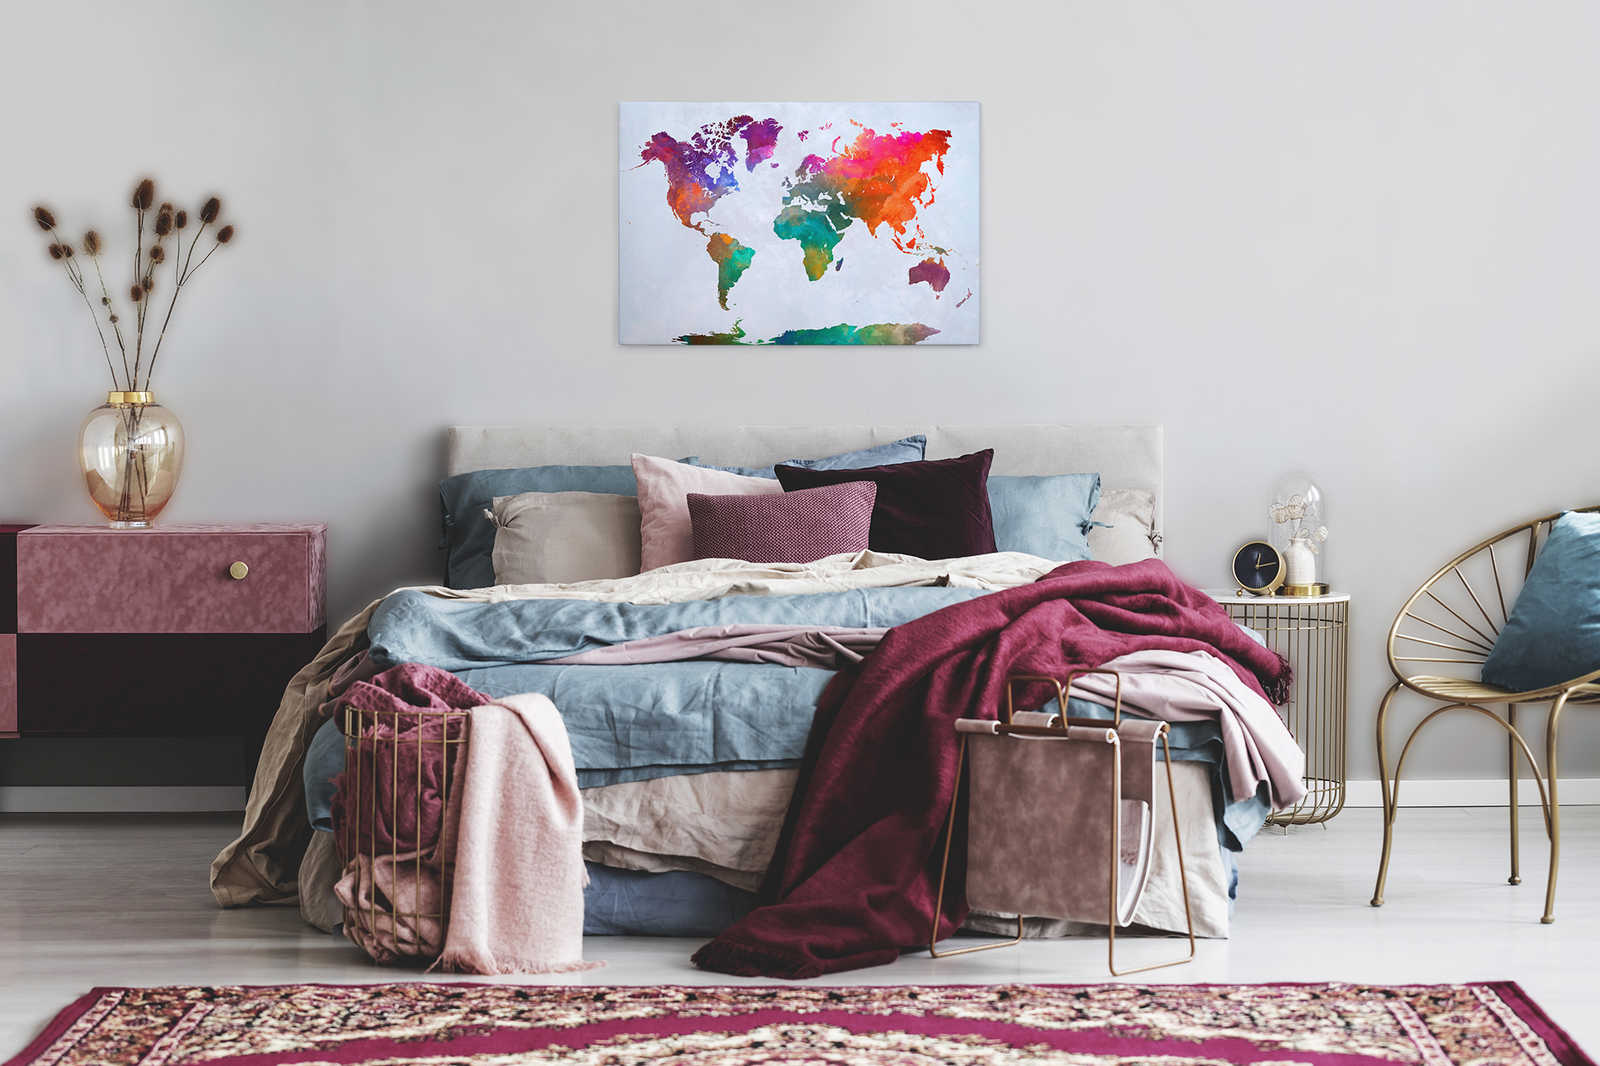             Mappa del mondo colorata su tela - 0,90 m x 0,60 m
        